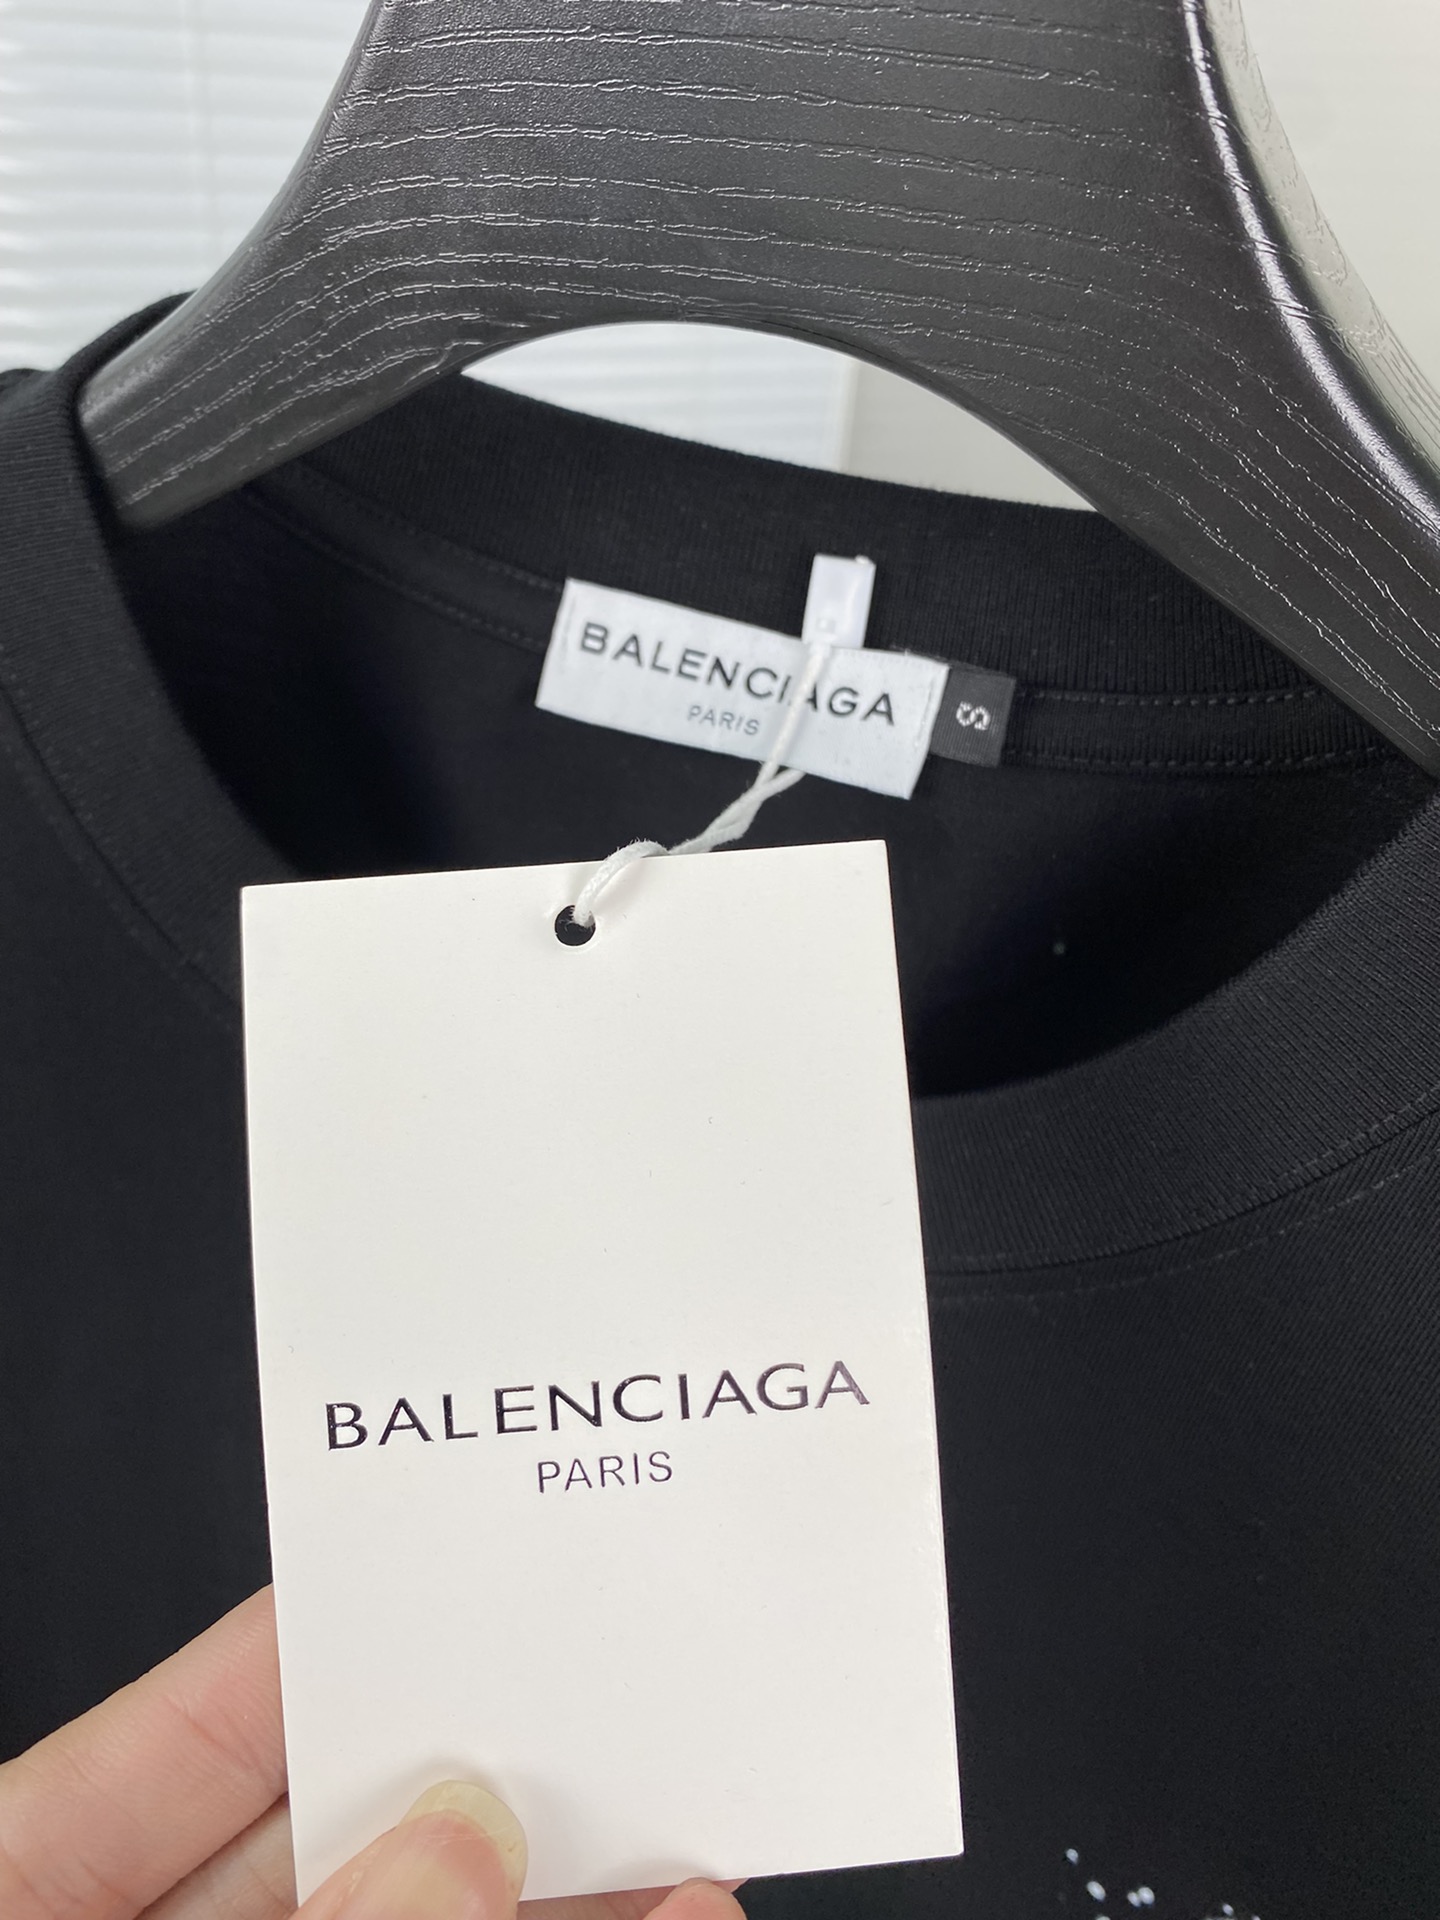 バレンシアガtシャツ コーデスーパーコピー トップス 純綿 ゆったり シンプル 高級品 人気新作 4色可選_8